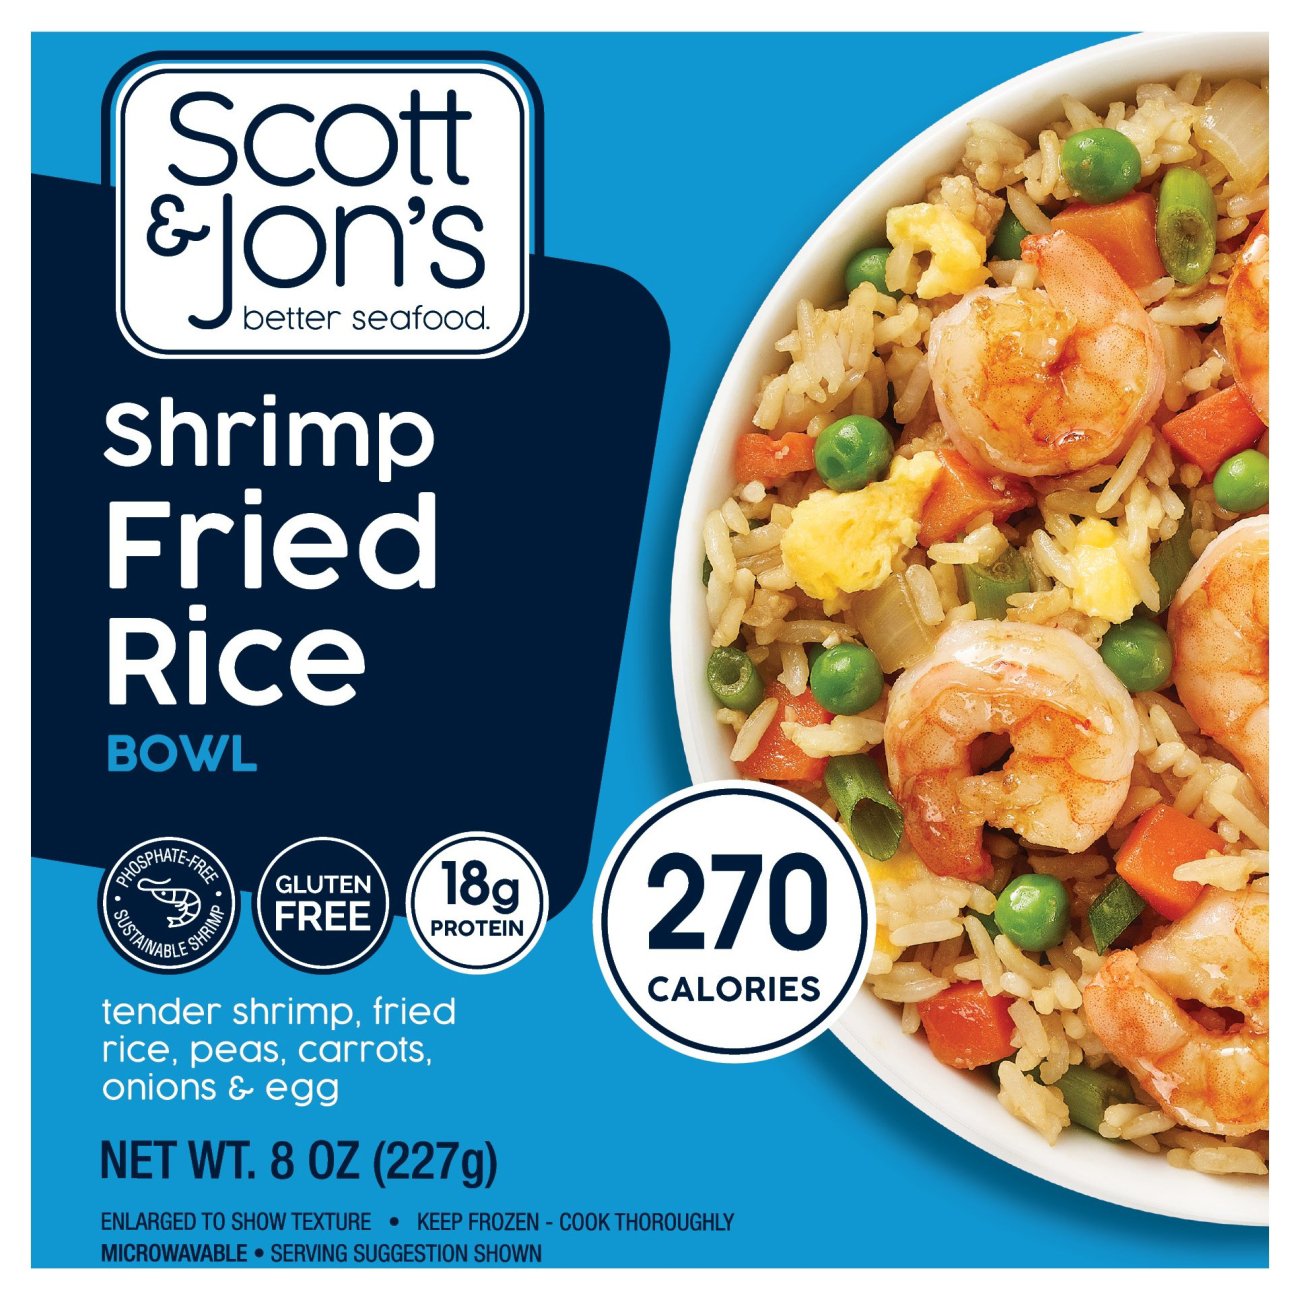 Scott & Jon's Shrimp Fried Rice Bowl - Shop Entrees & Sides at H-E-B